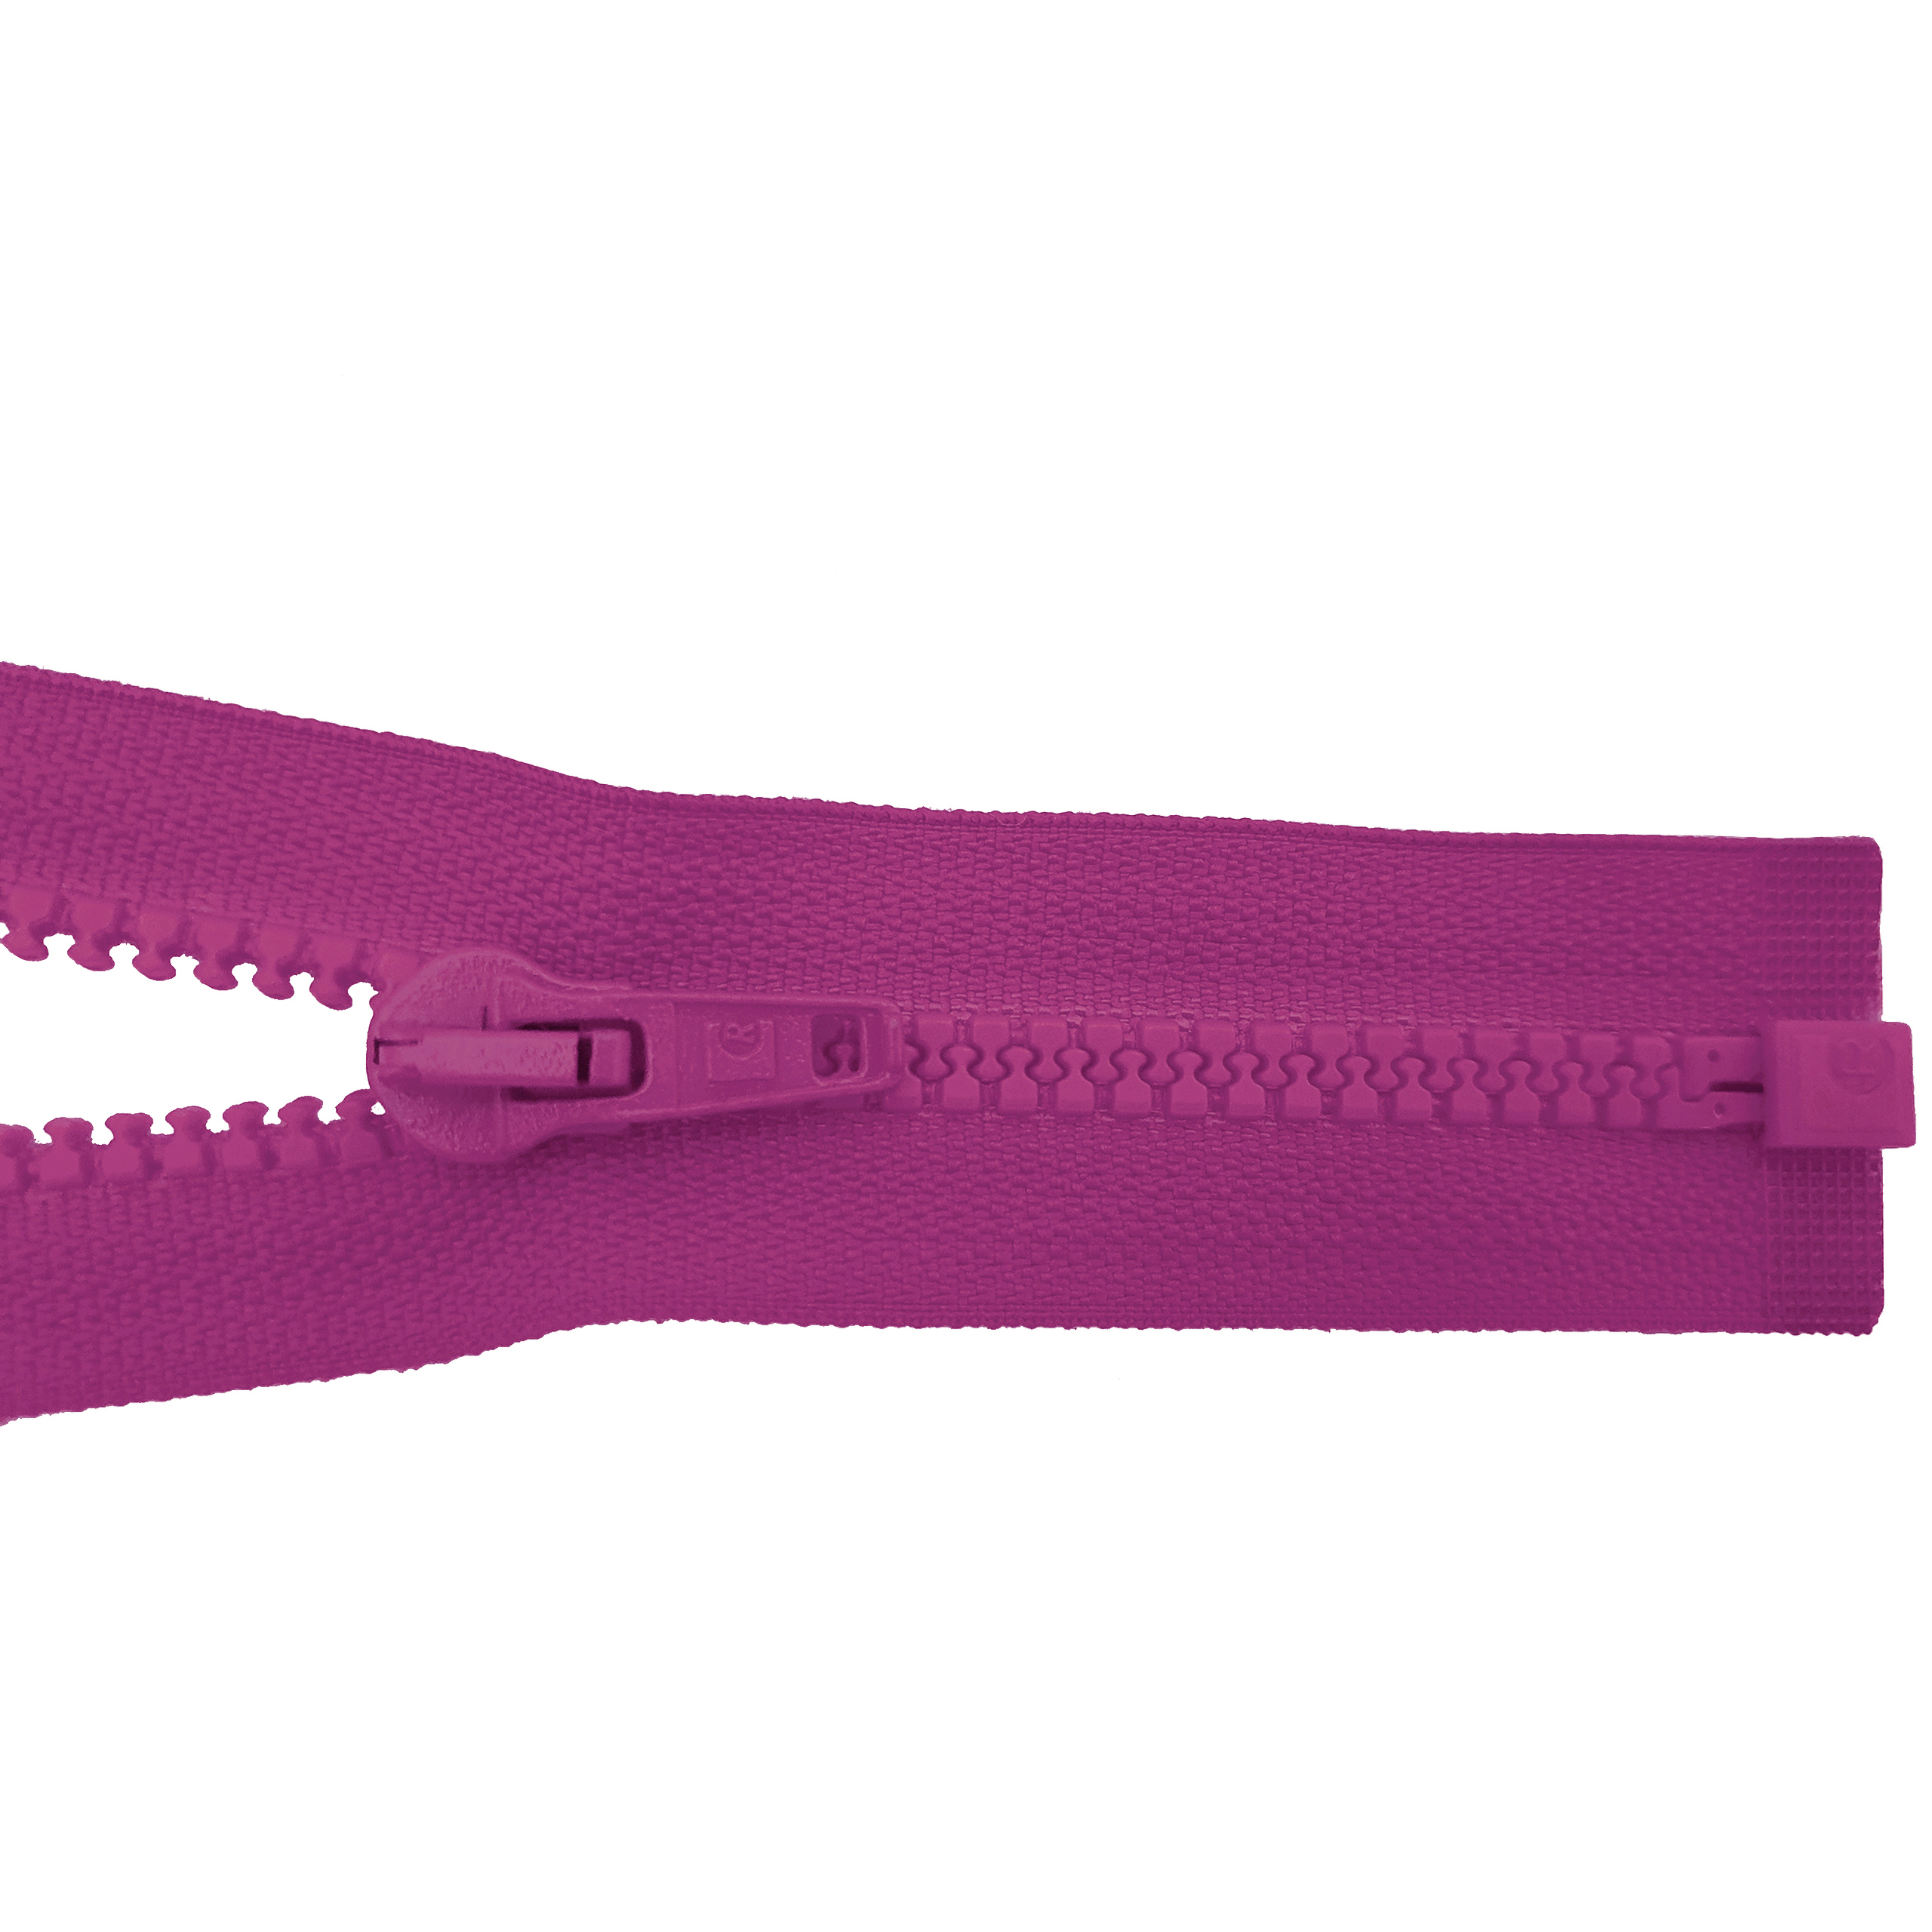 Reißverschluss 80cm, teilbar, Kstoff Zähne breit, cyclam, hochwertiger Marken-Reißverschluss von Rubi/Barcelona